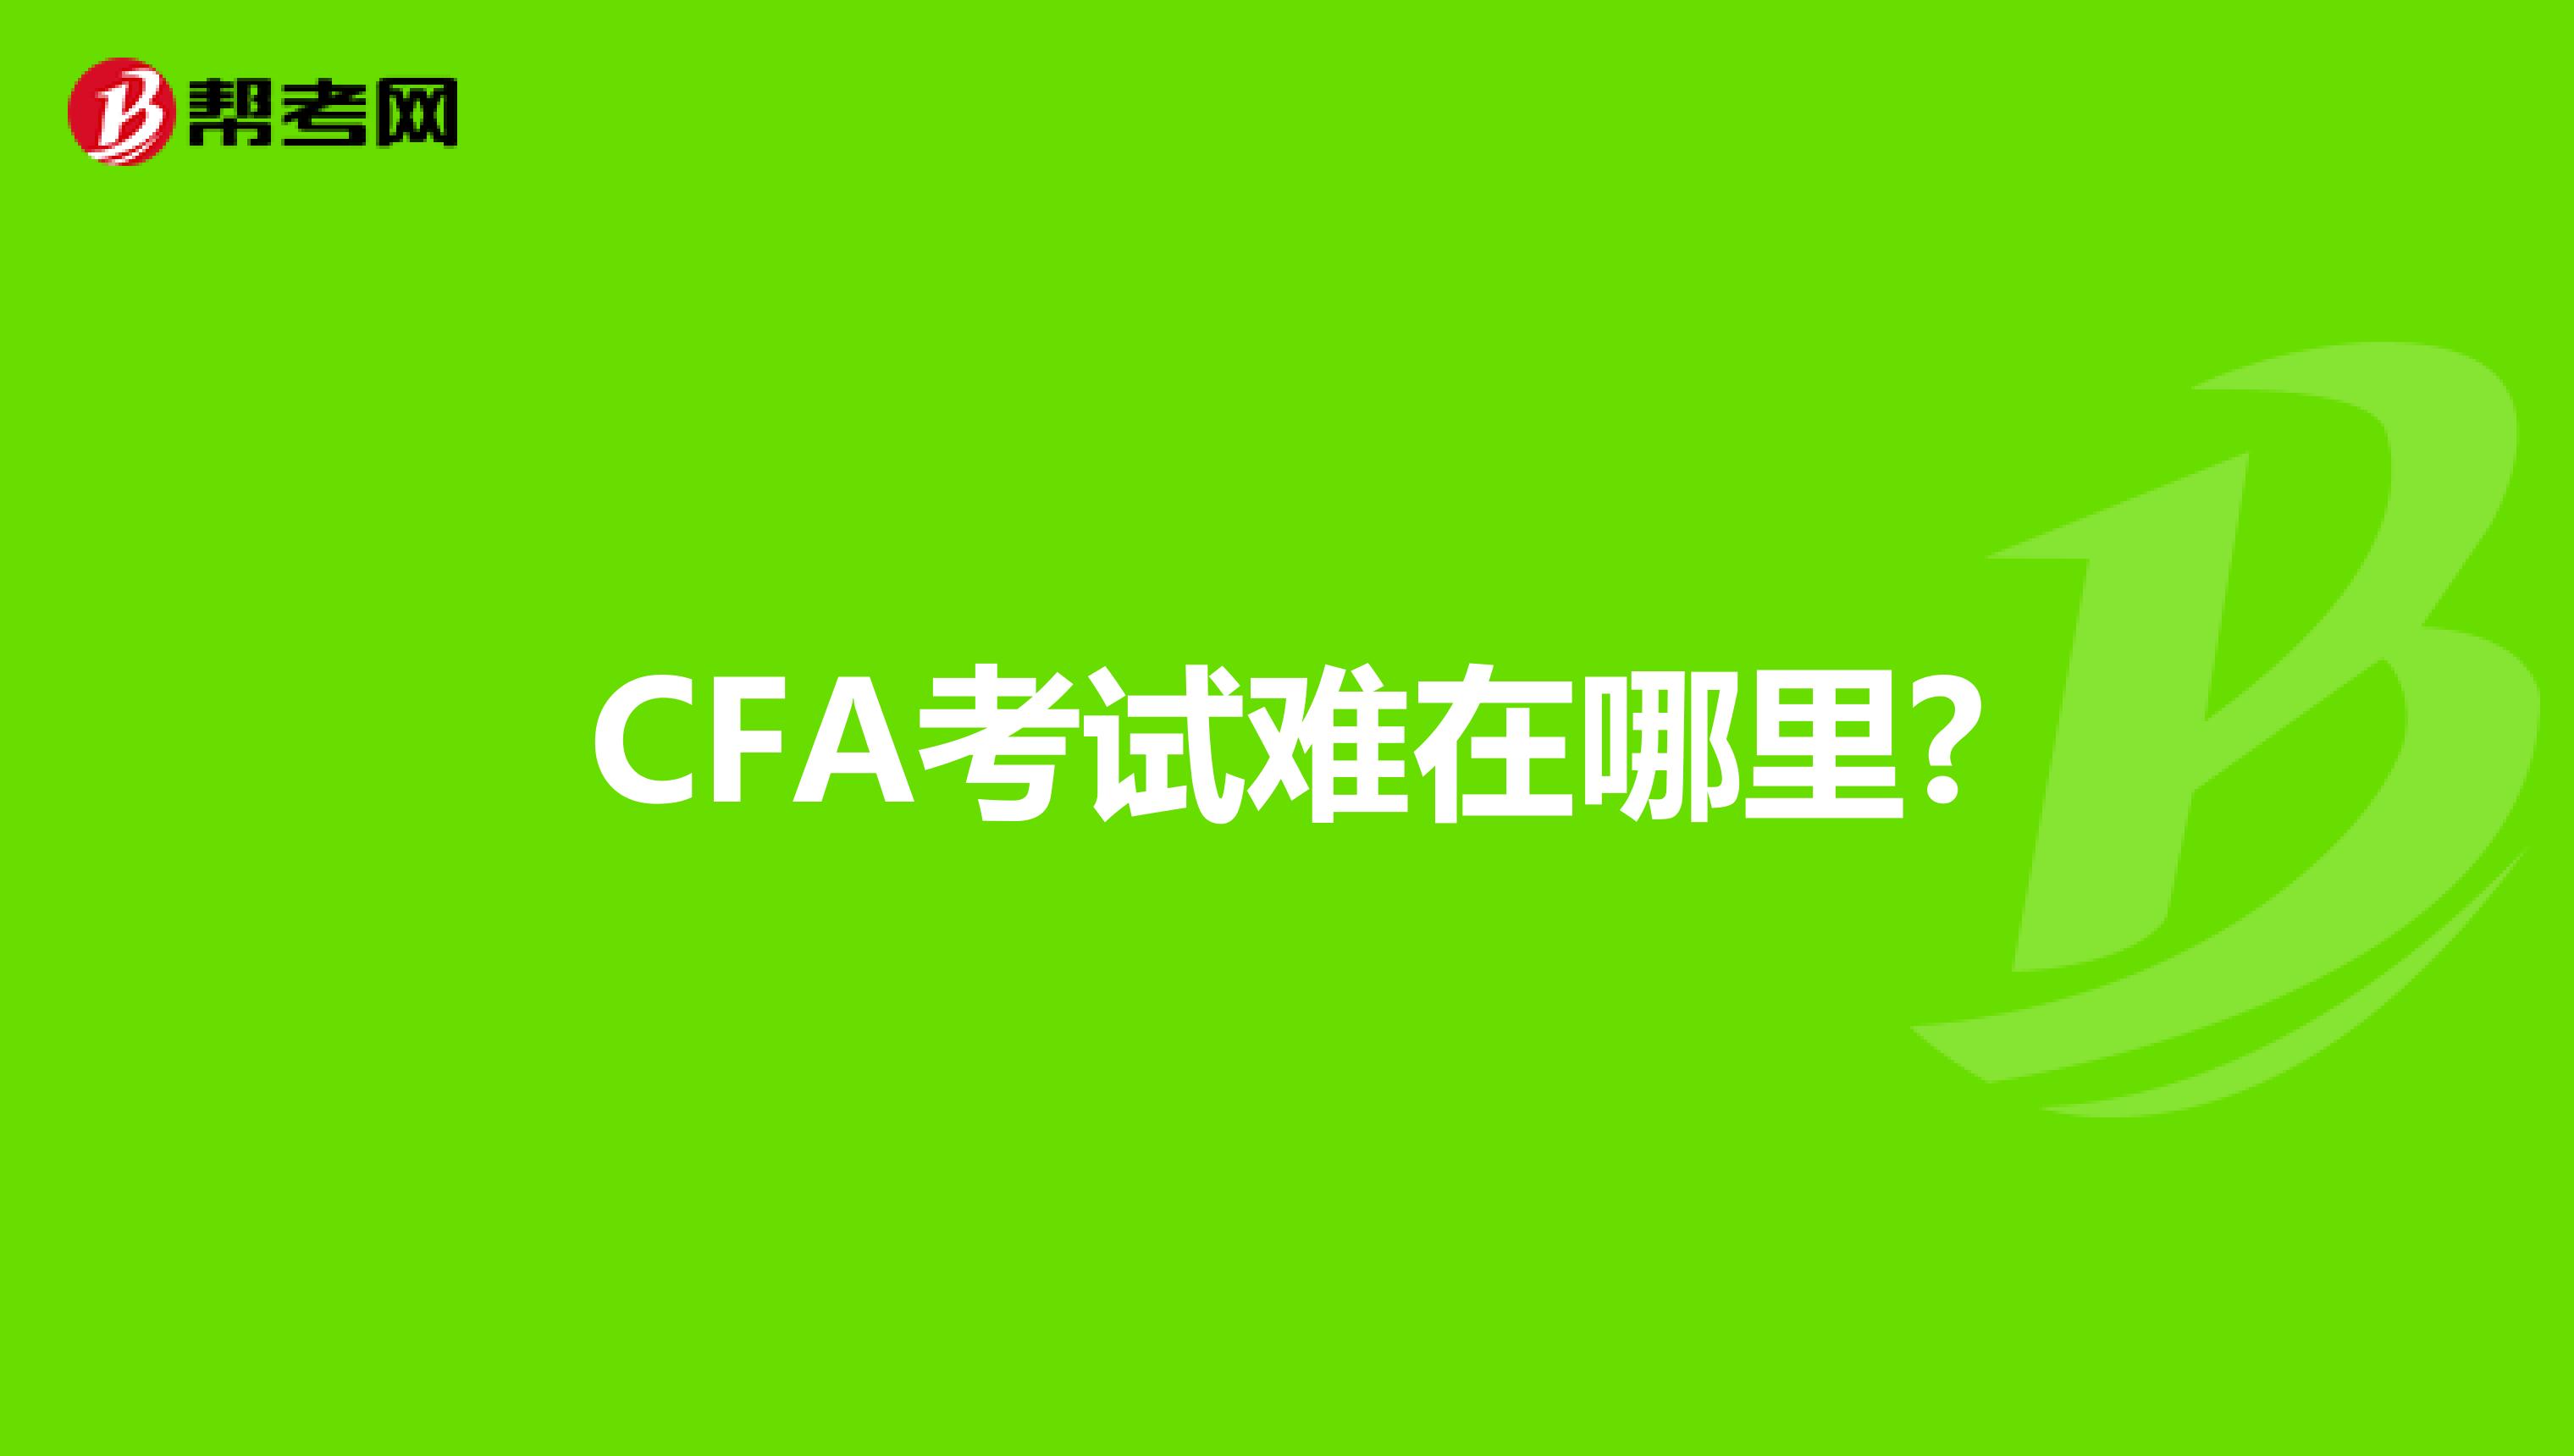 CFA考试难在哪里?